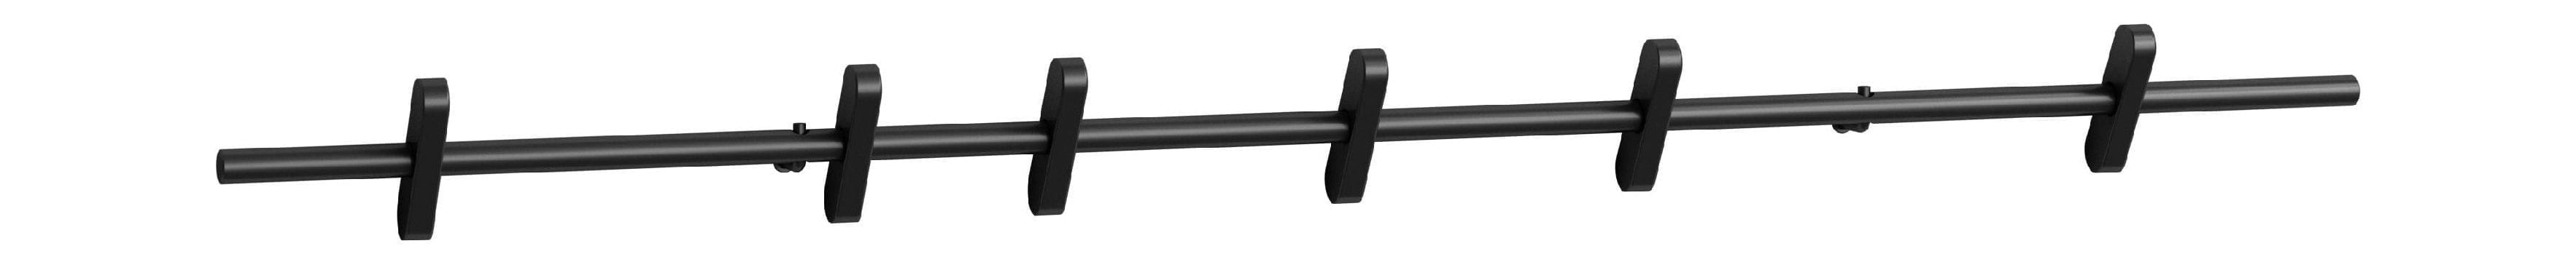 Moebe Krokar 70 cm, svart